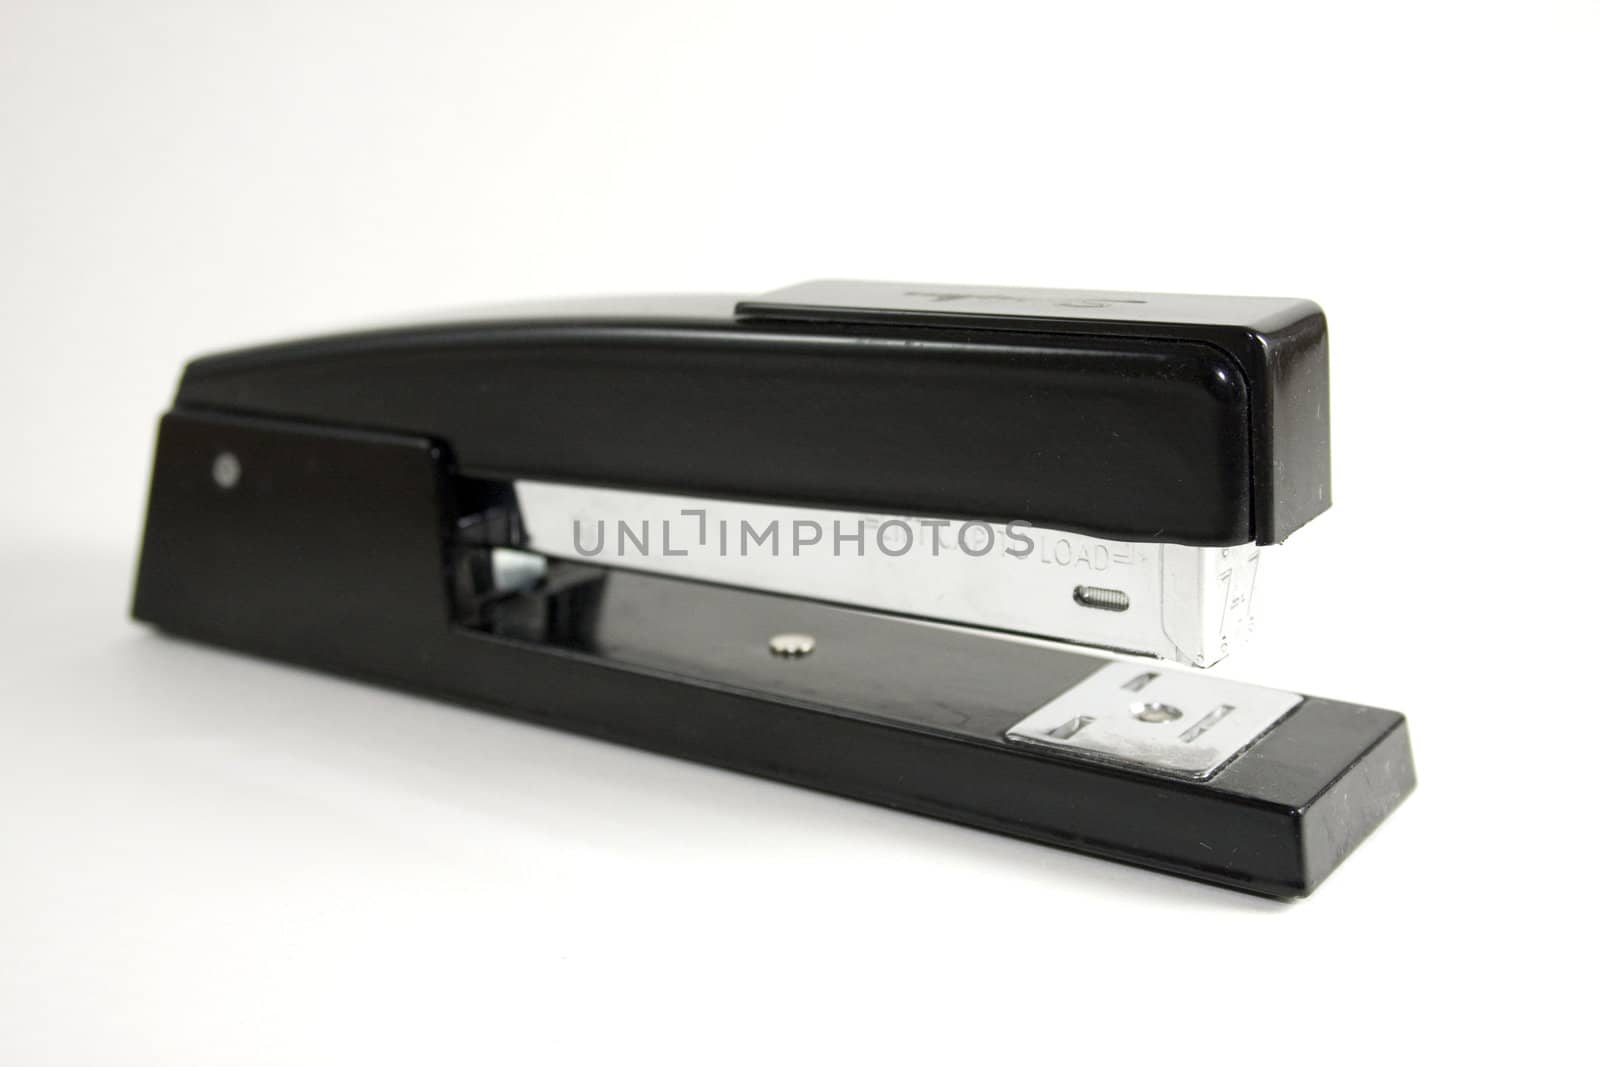 Black stapler on white background